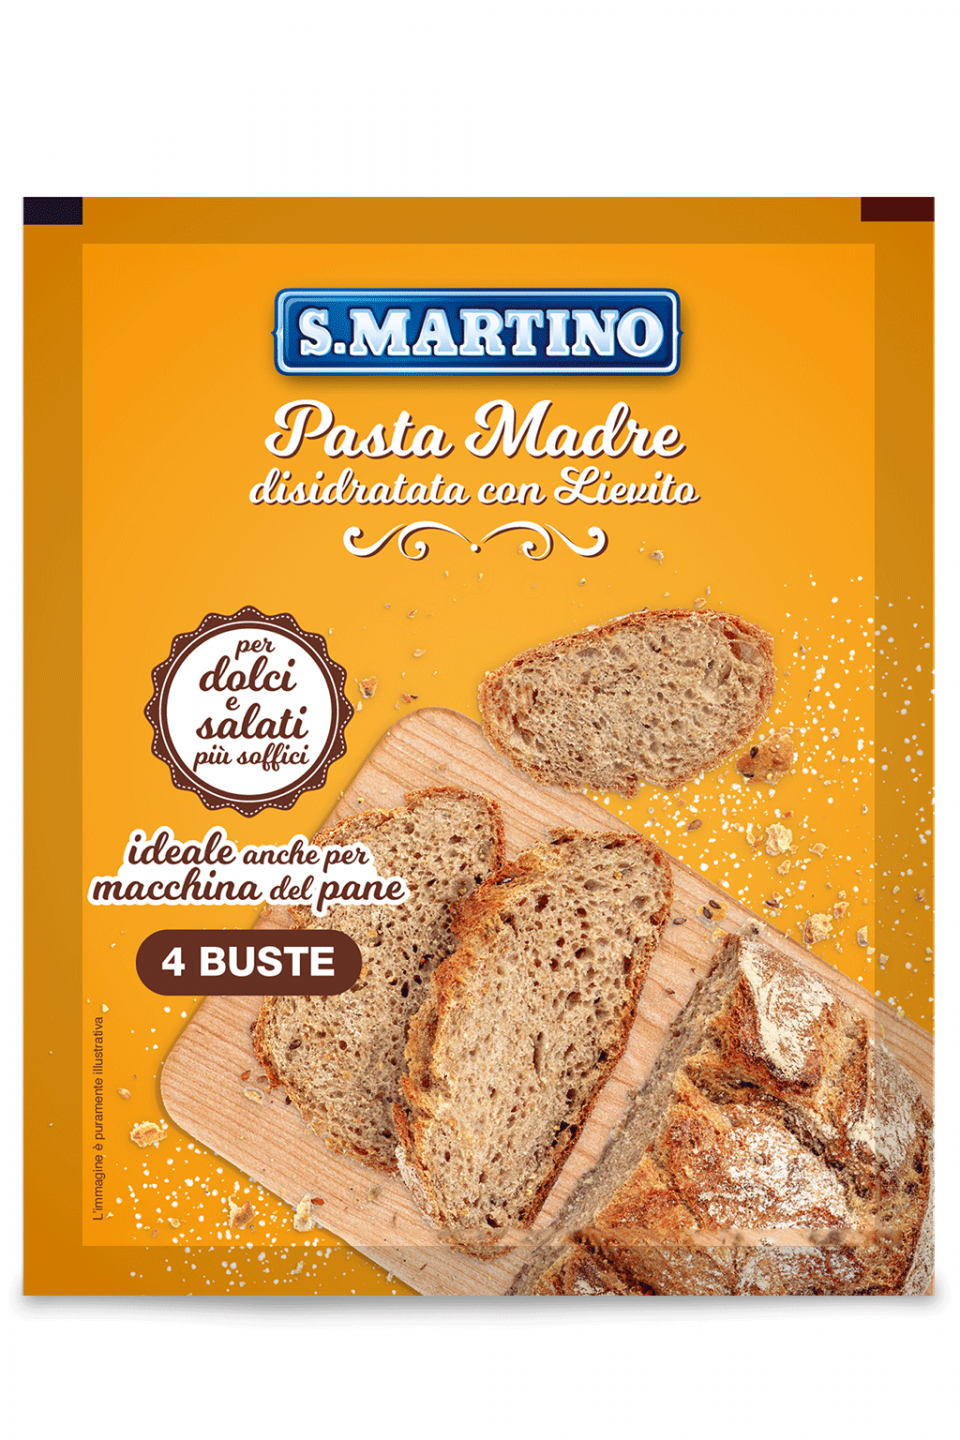 S.MARTINO Pasta Madre disidratata con Lievito 50g